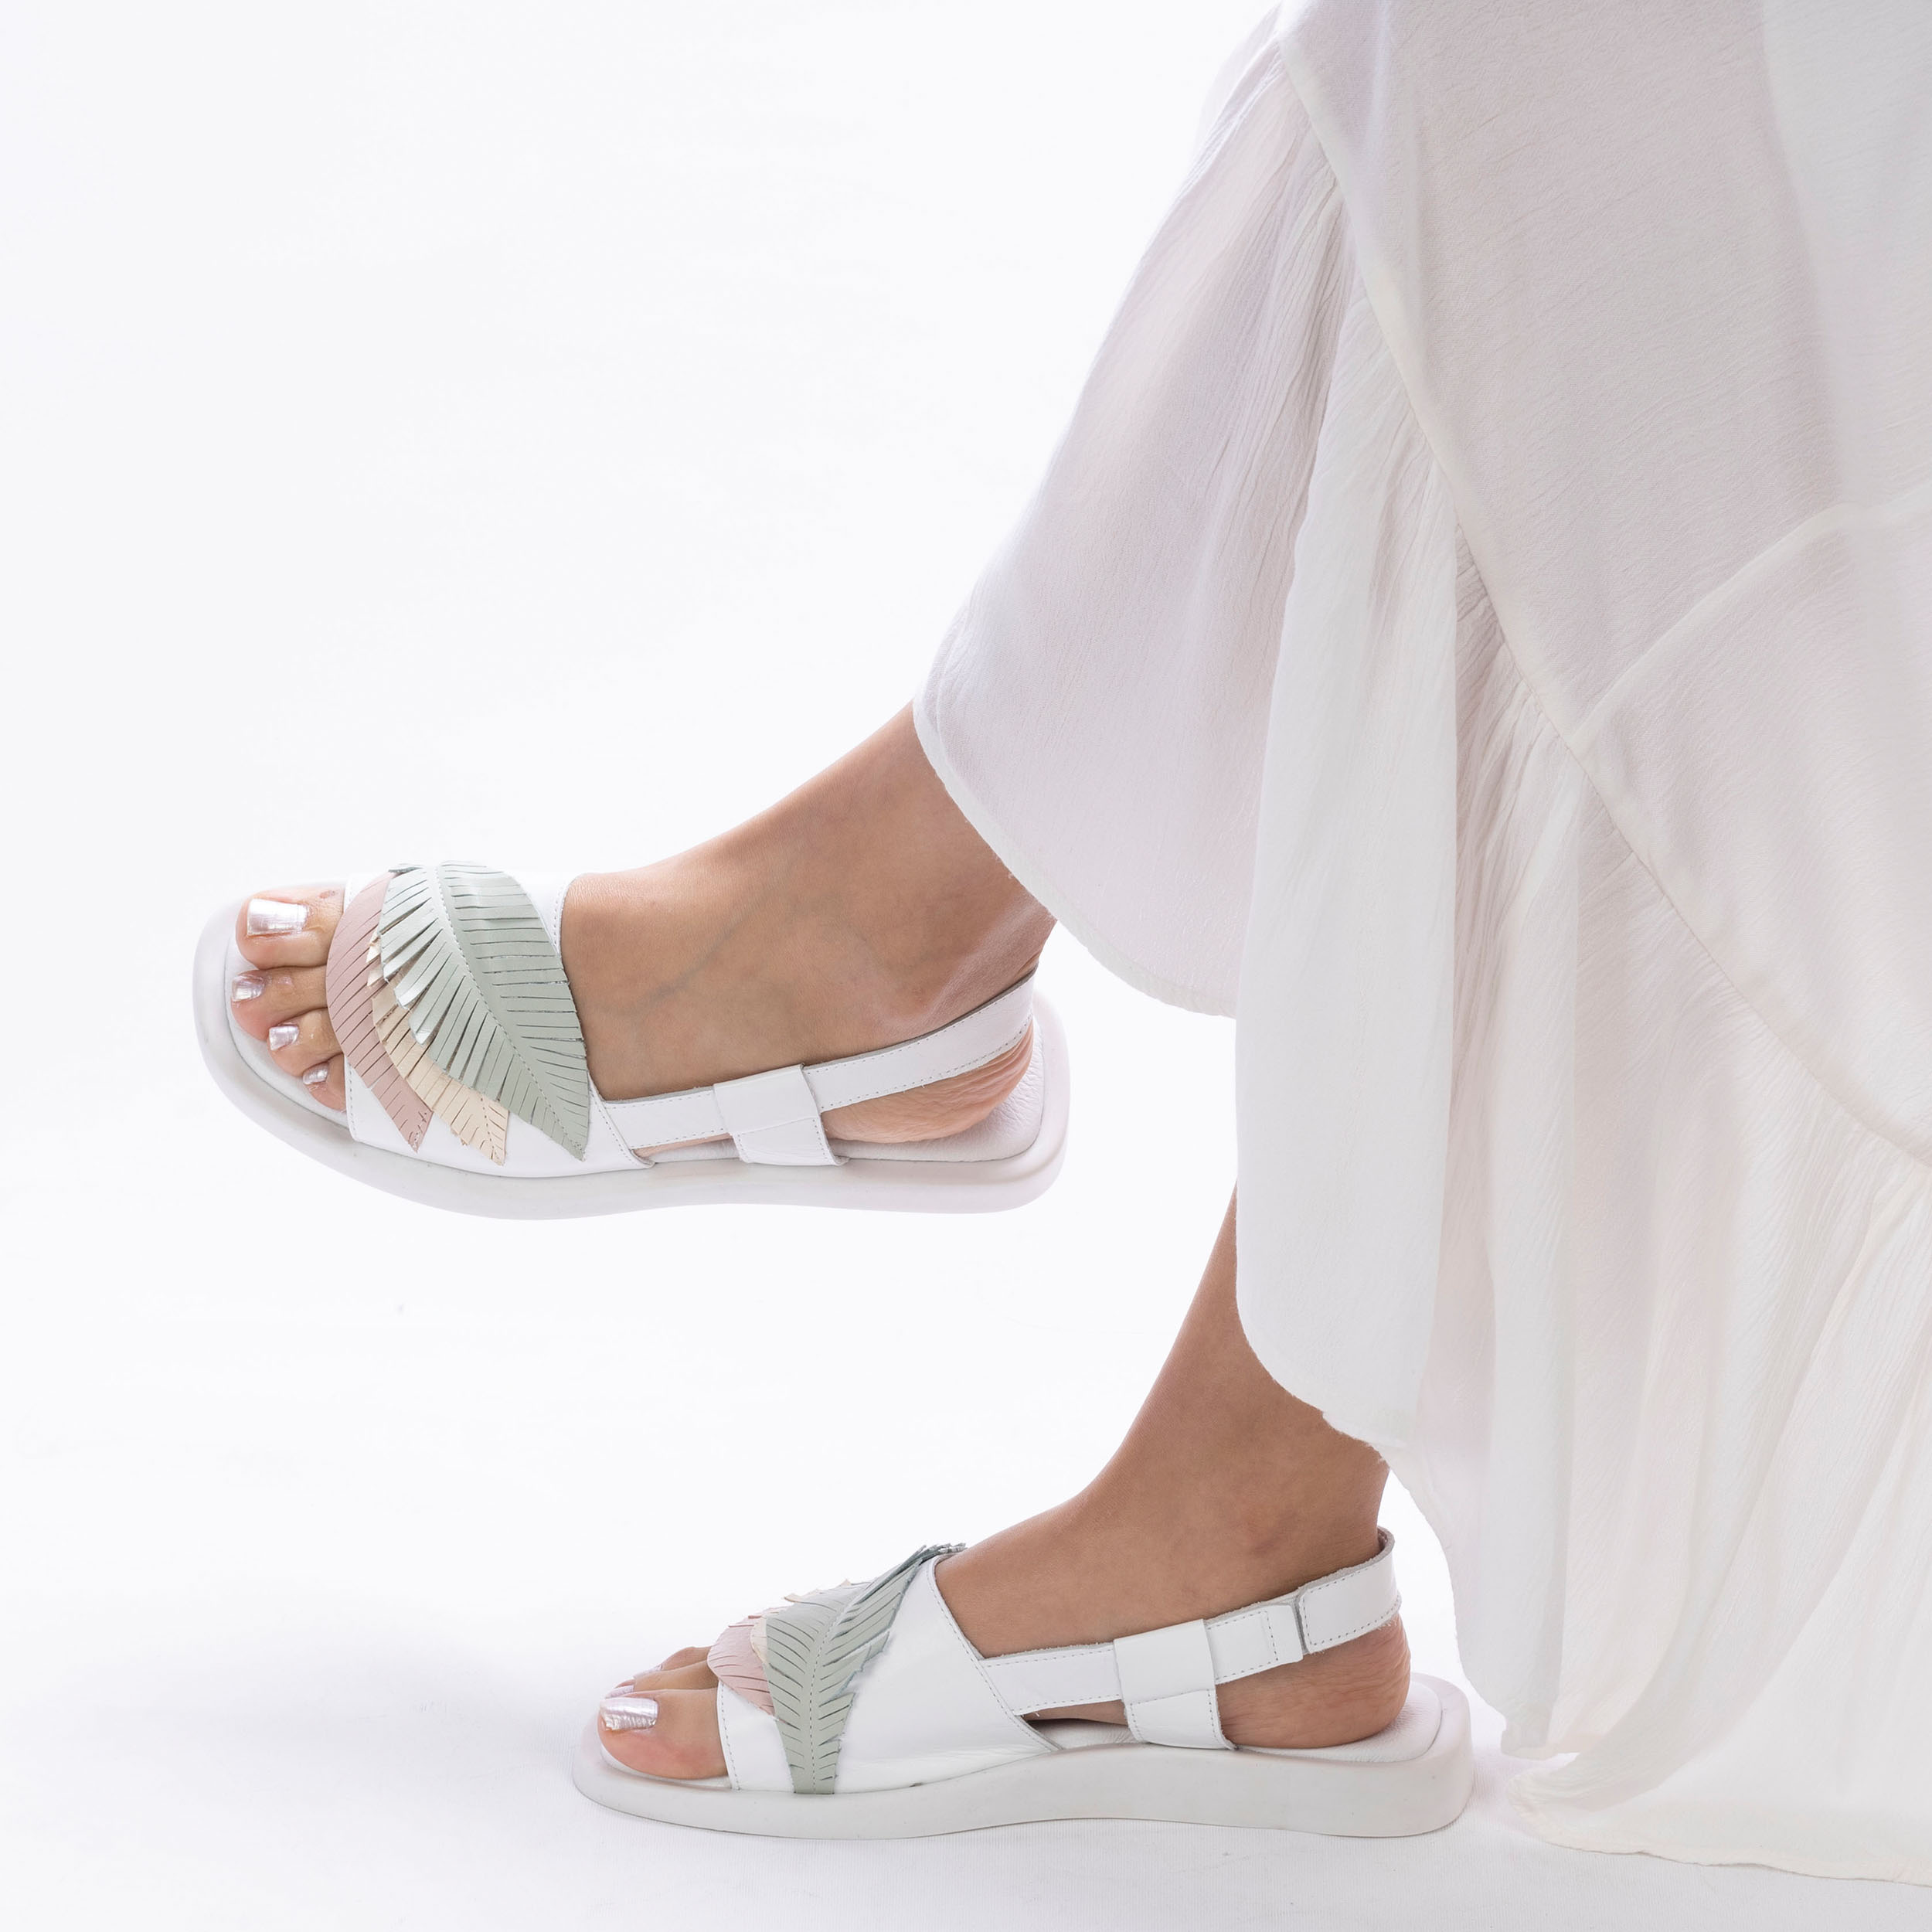 TwoEgoist Kadın Hakiki Deri Günlük Rahat Tasarım Sandalet, Renk: Beyaz, Beden: 36